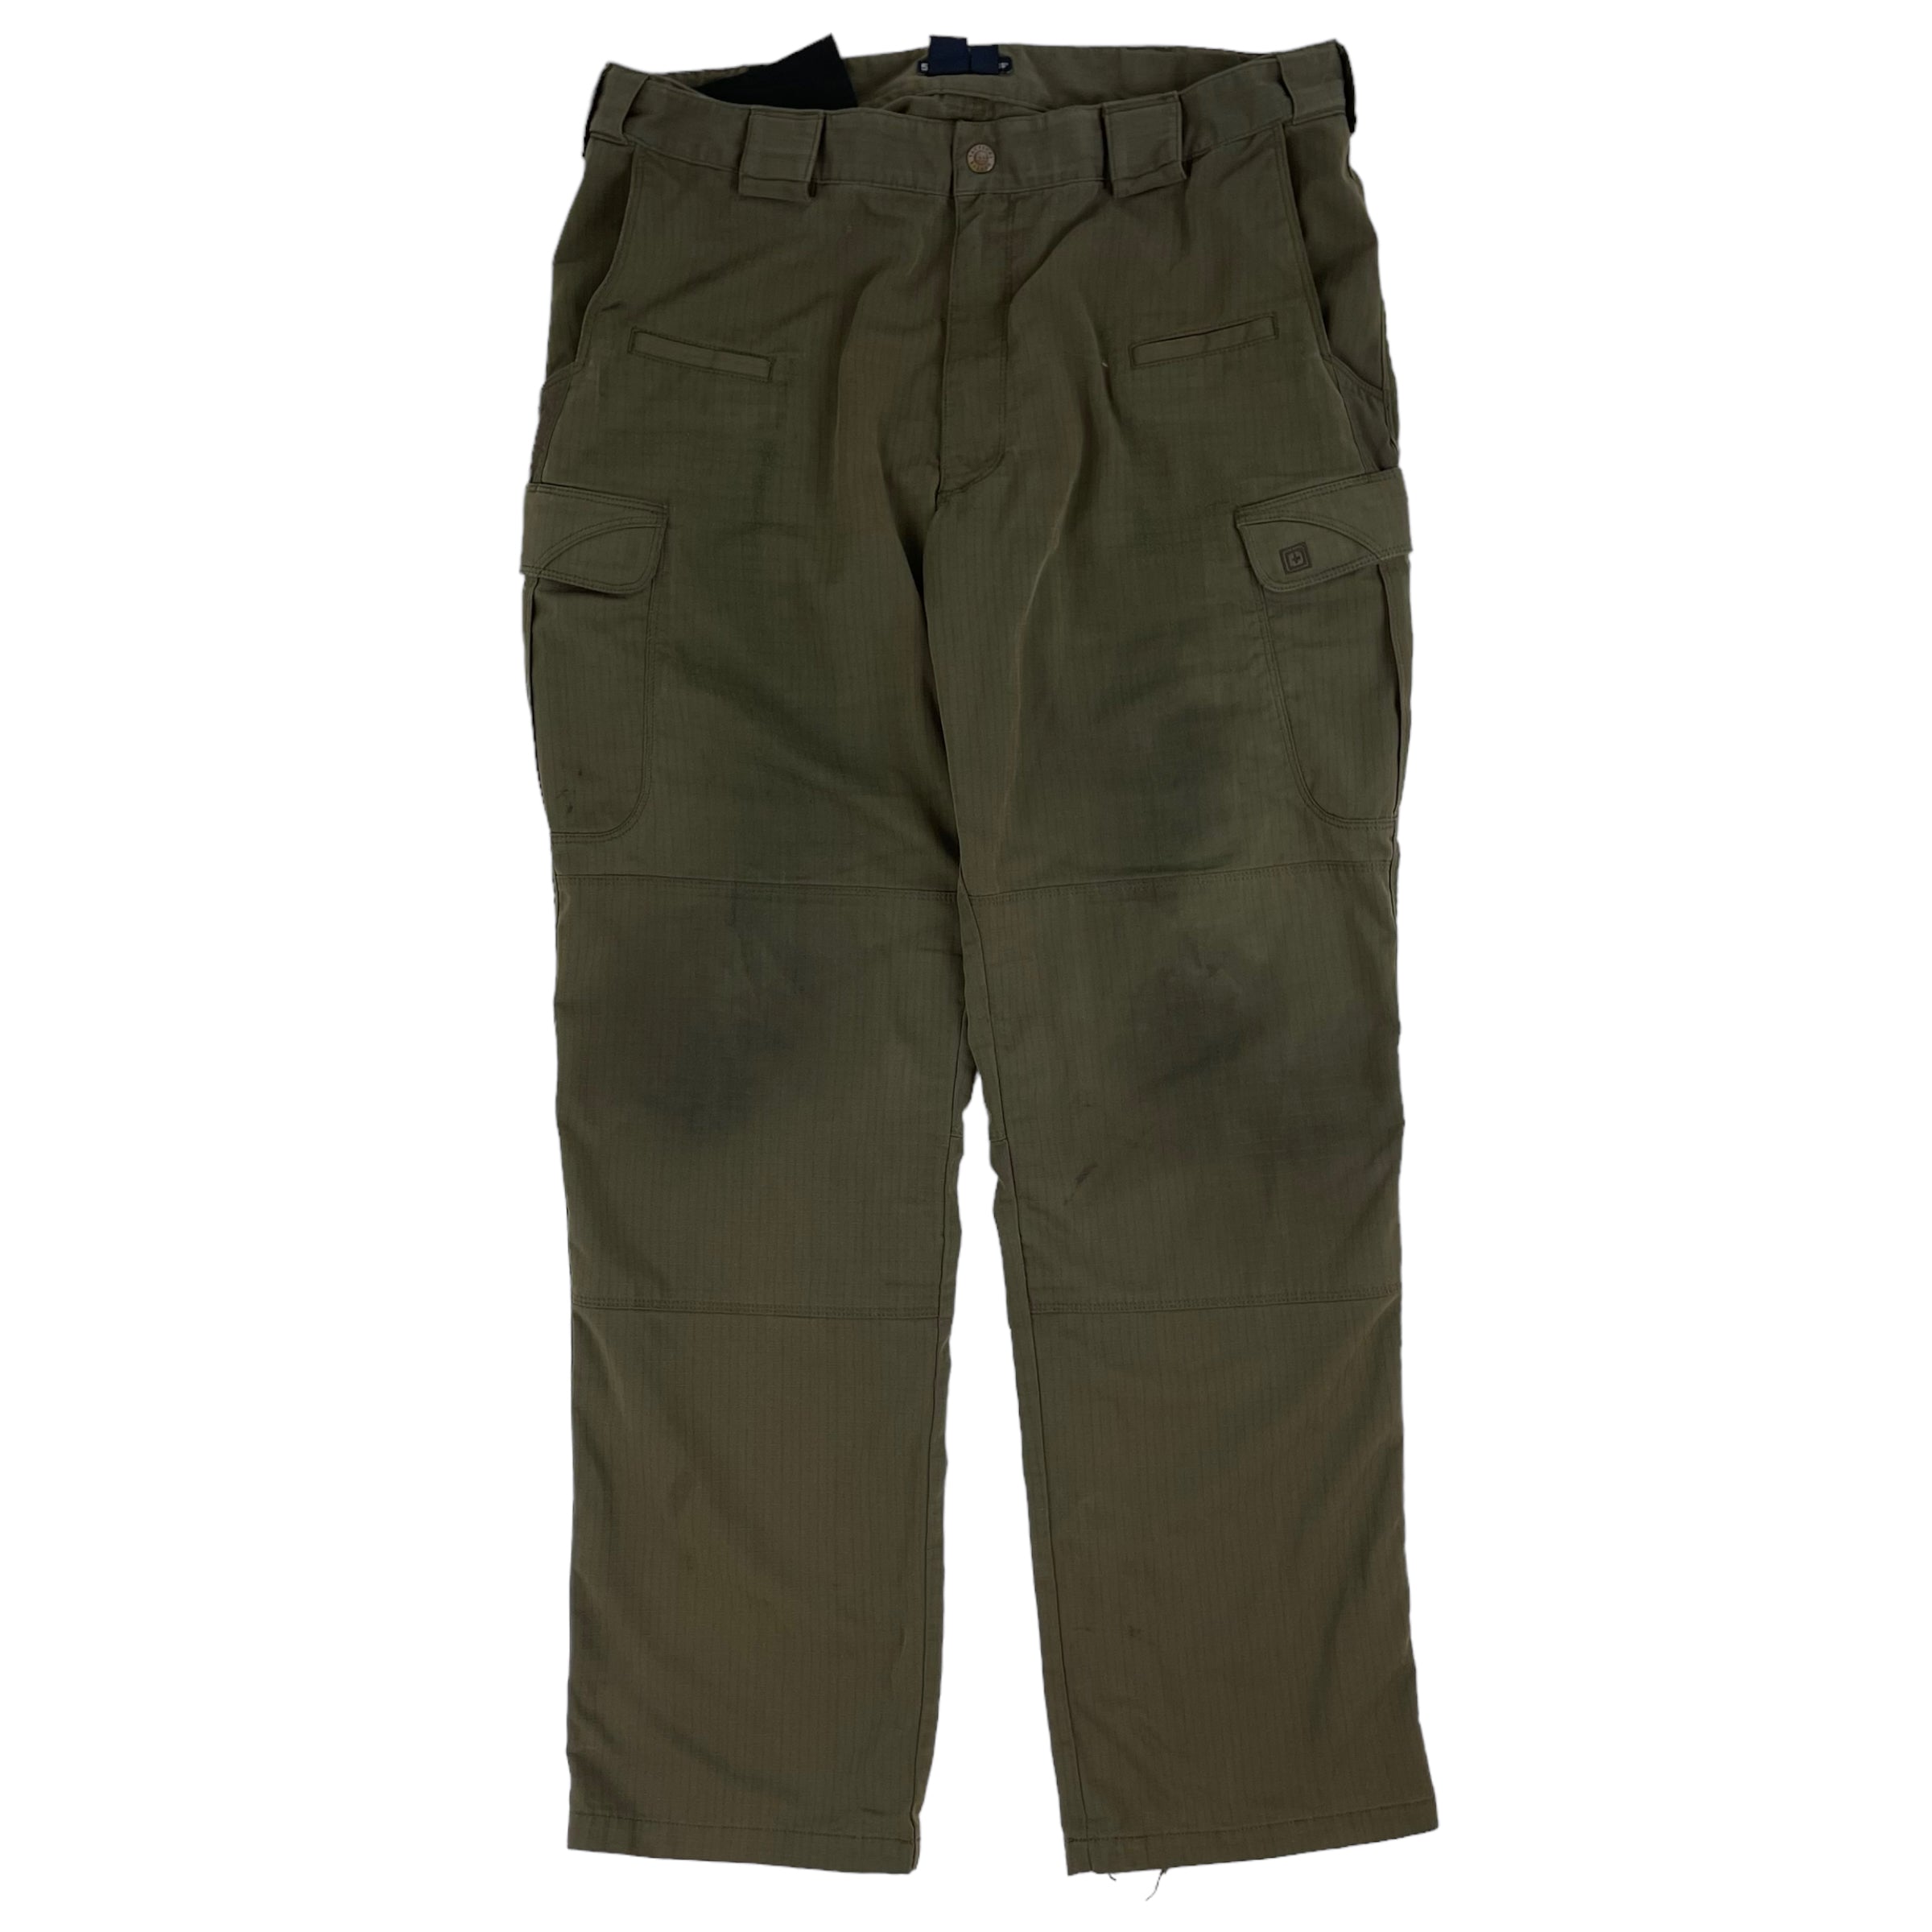 Vintage 511 Tactical Pants Olive